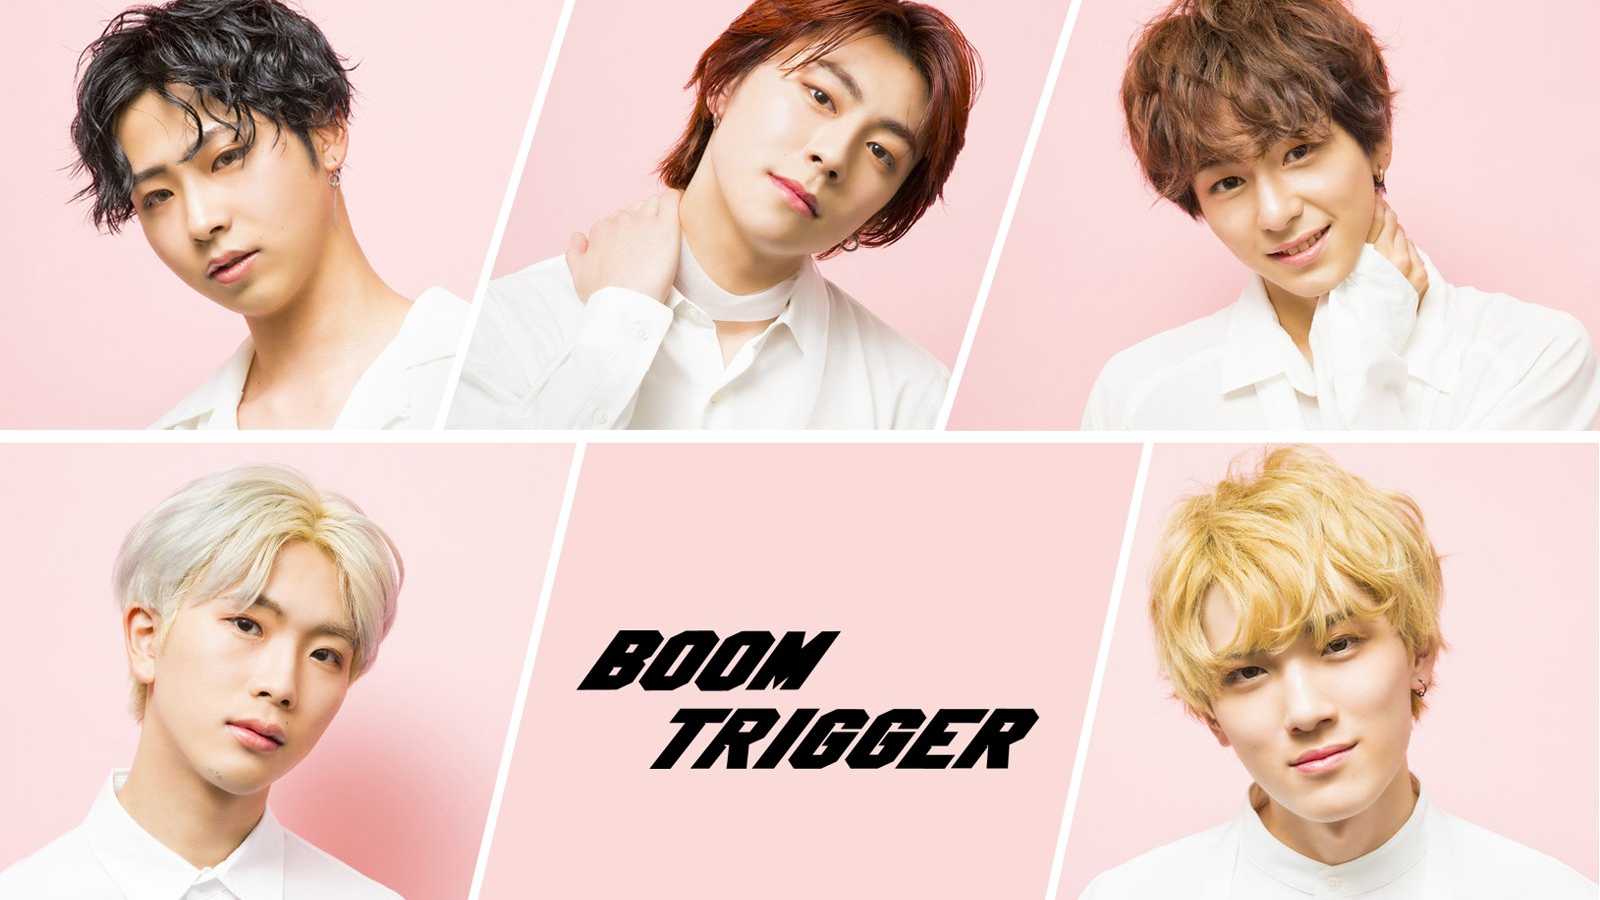 Novo grupo: Boom Trigger © Boom Trigger